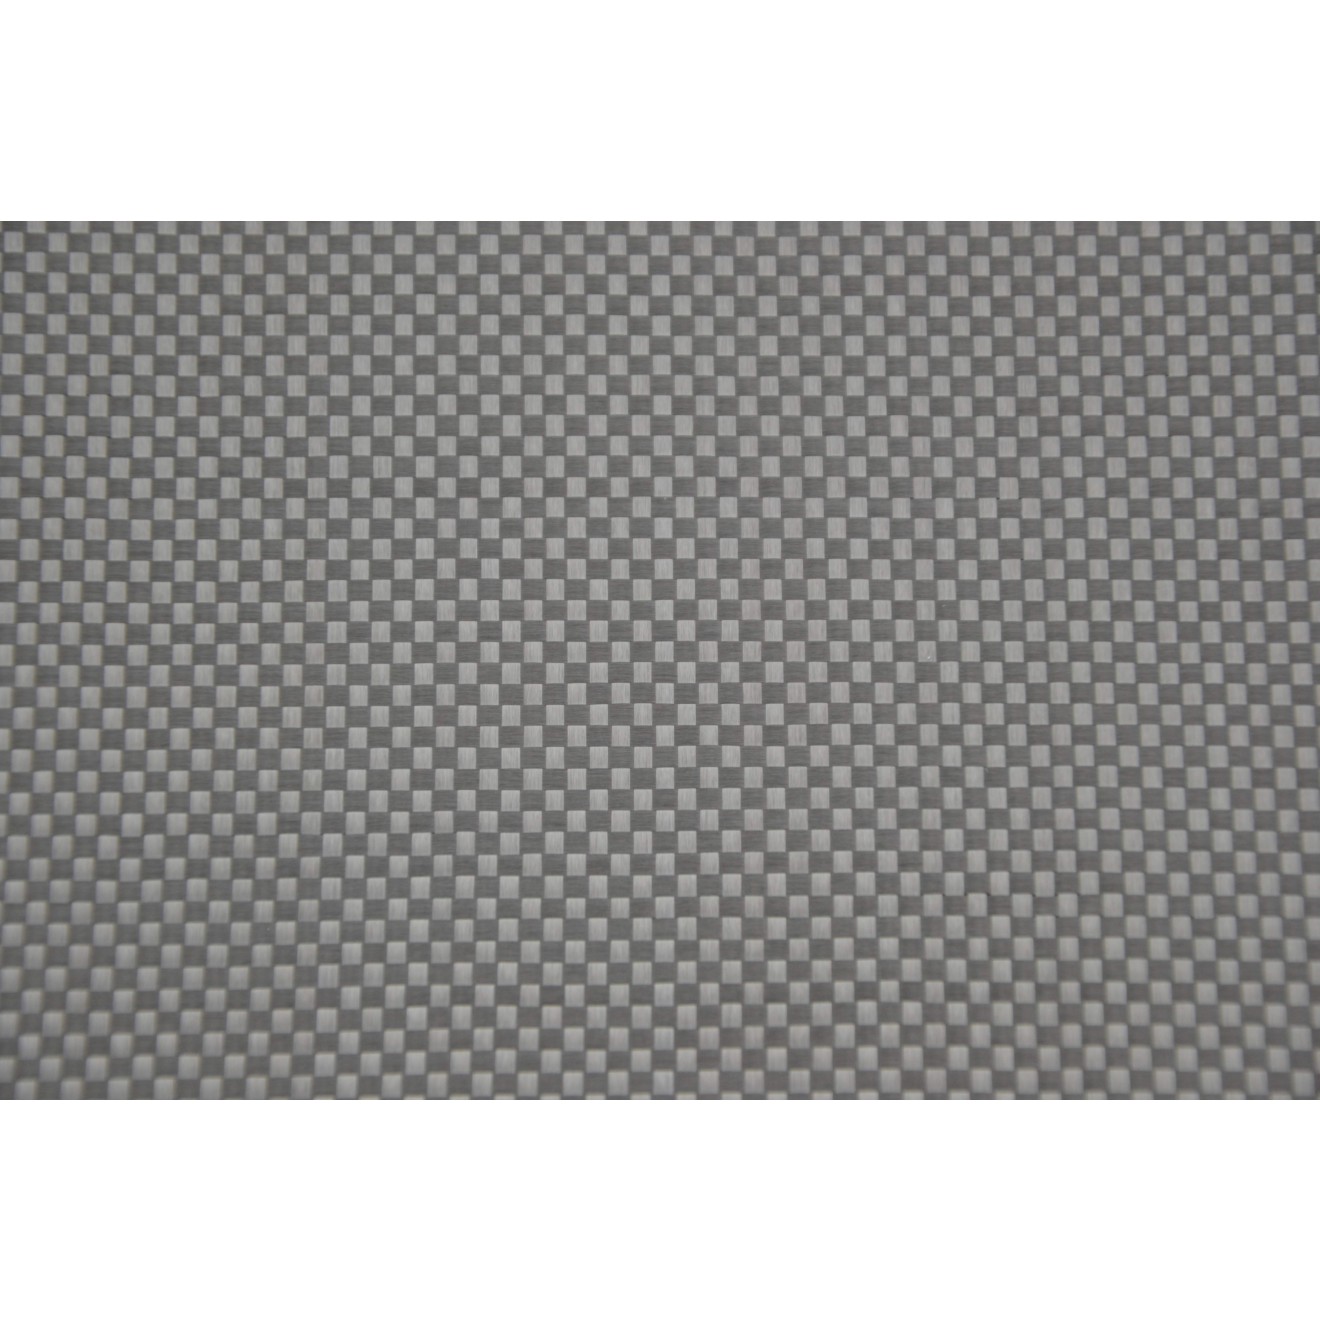 ECCellent Woven carbon fiber fabric 3K, 200g/m² plain weave spread